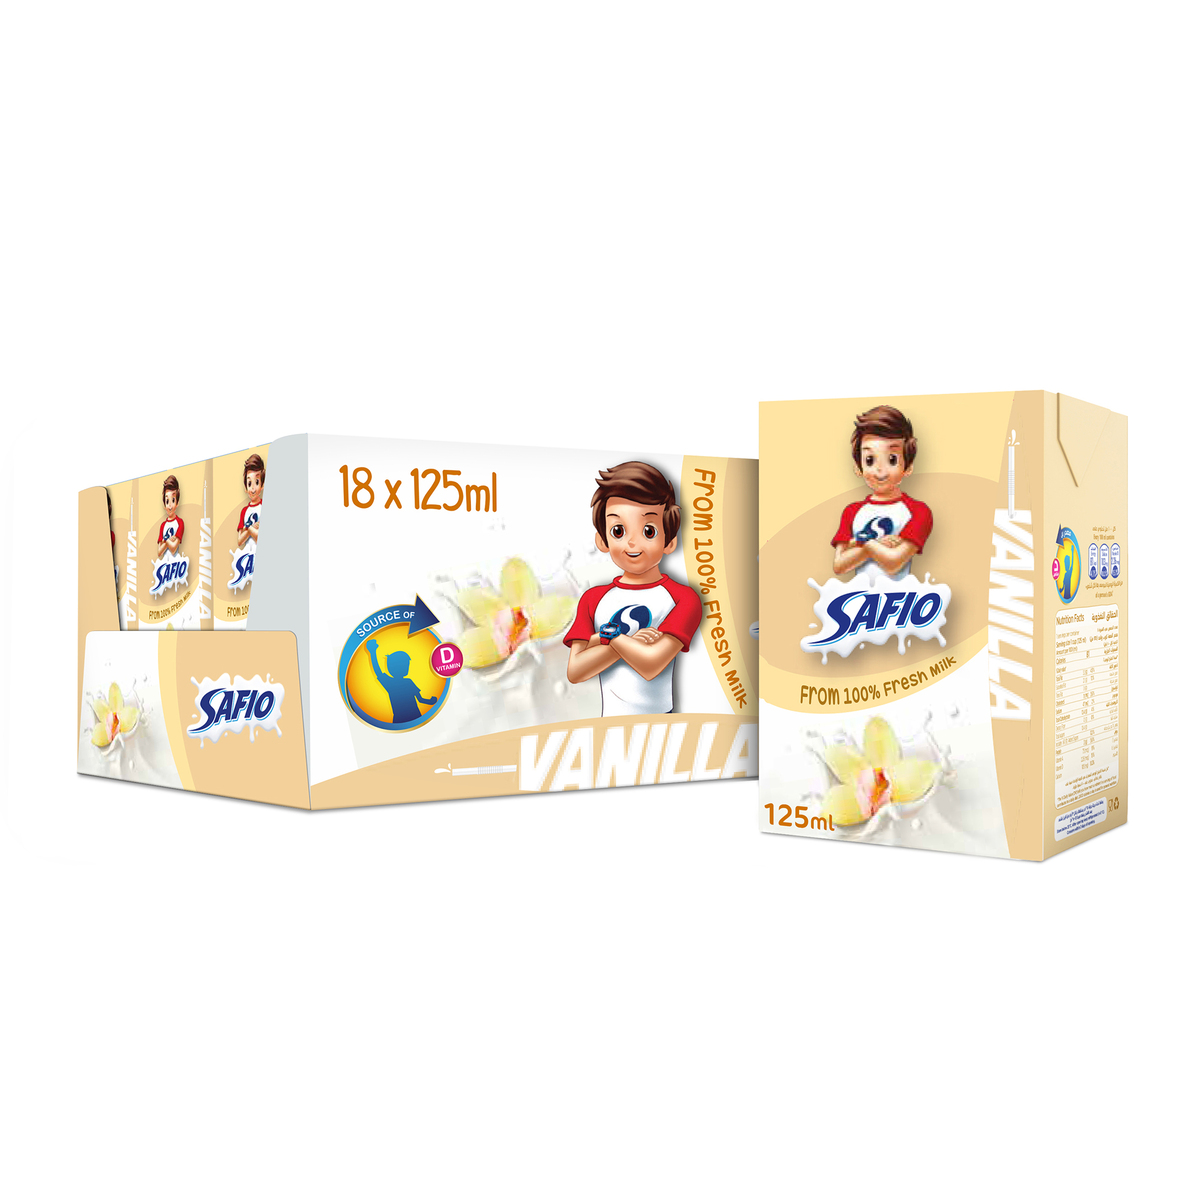 Safio UHT Milk Vanilla Flavor 18 x 125ml